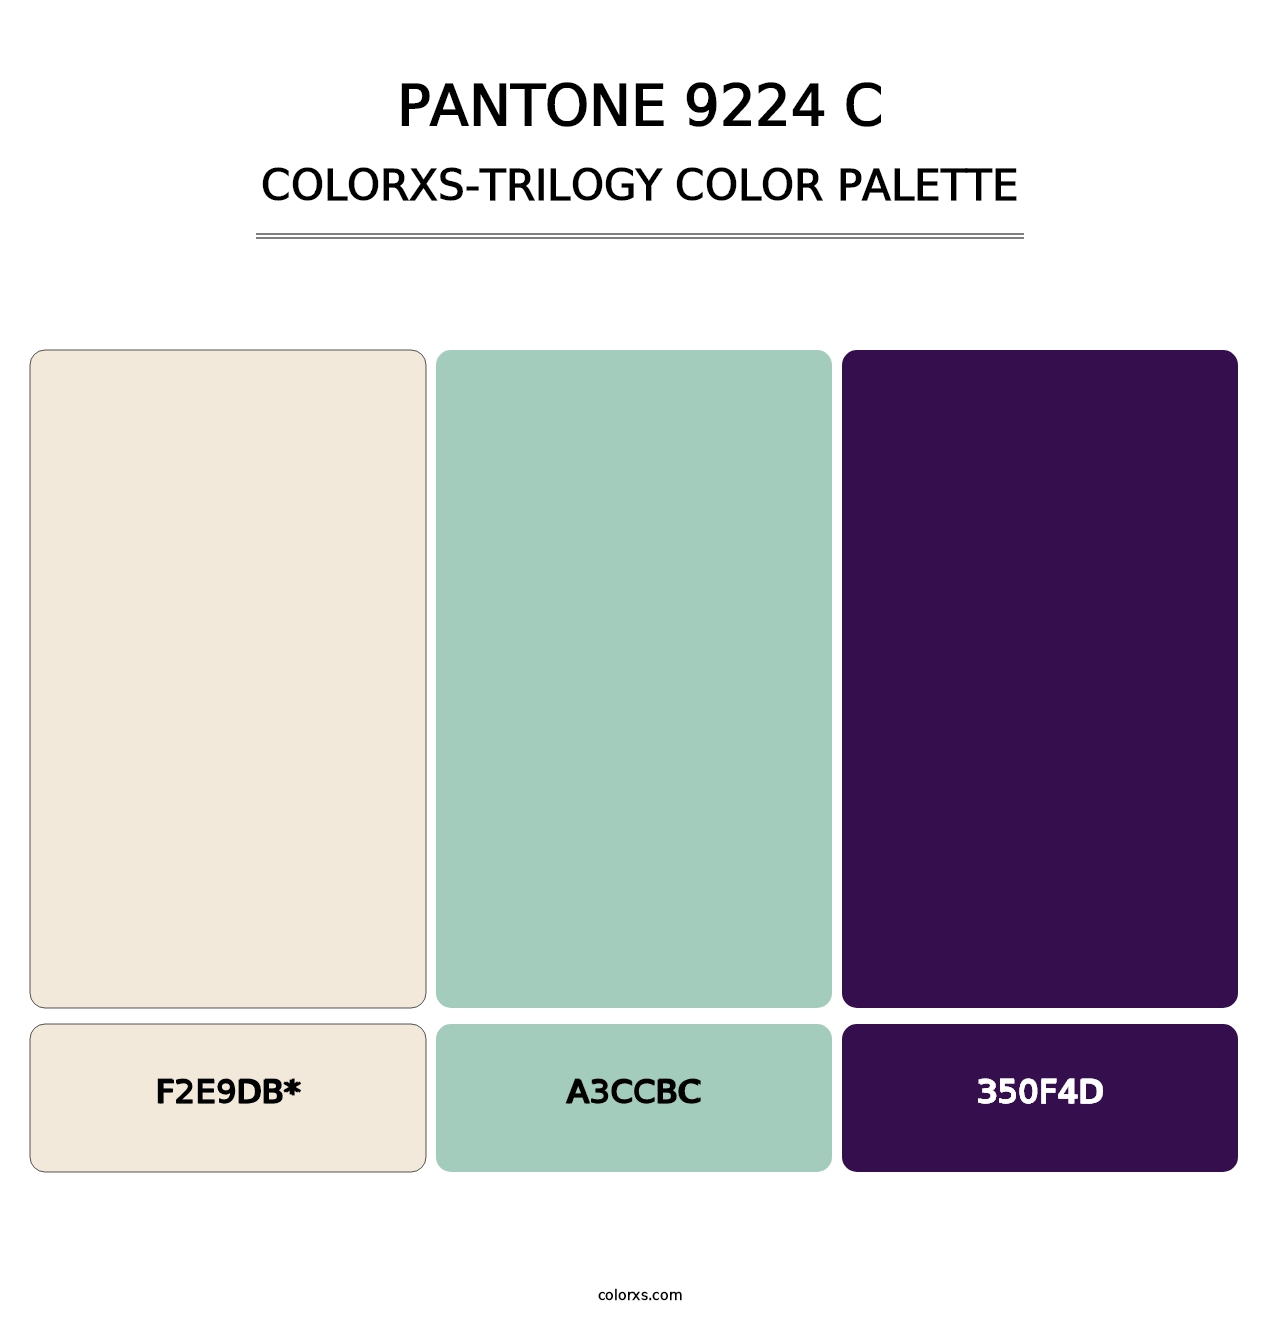 PANTONE 9224 C - Colorxs Trilogy Palette